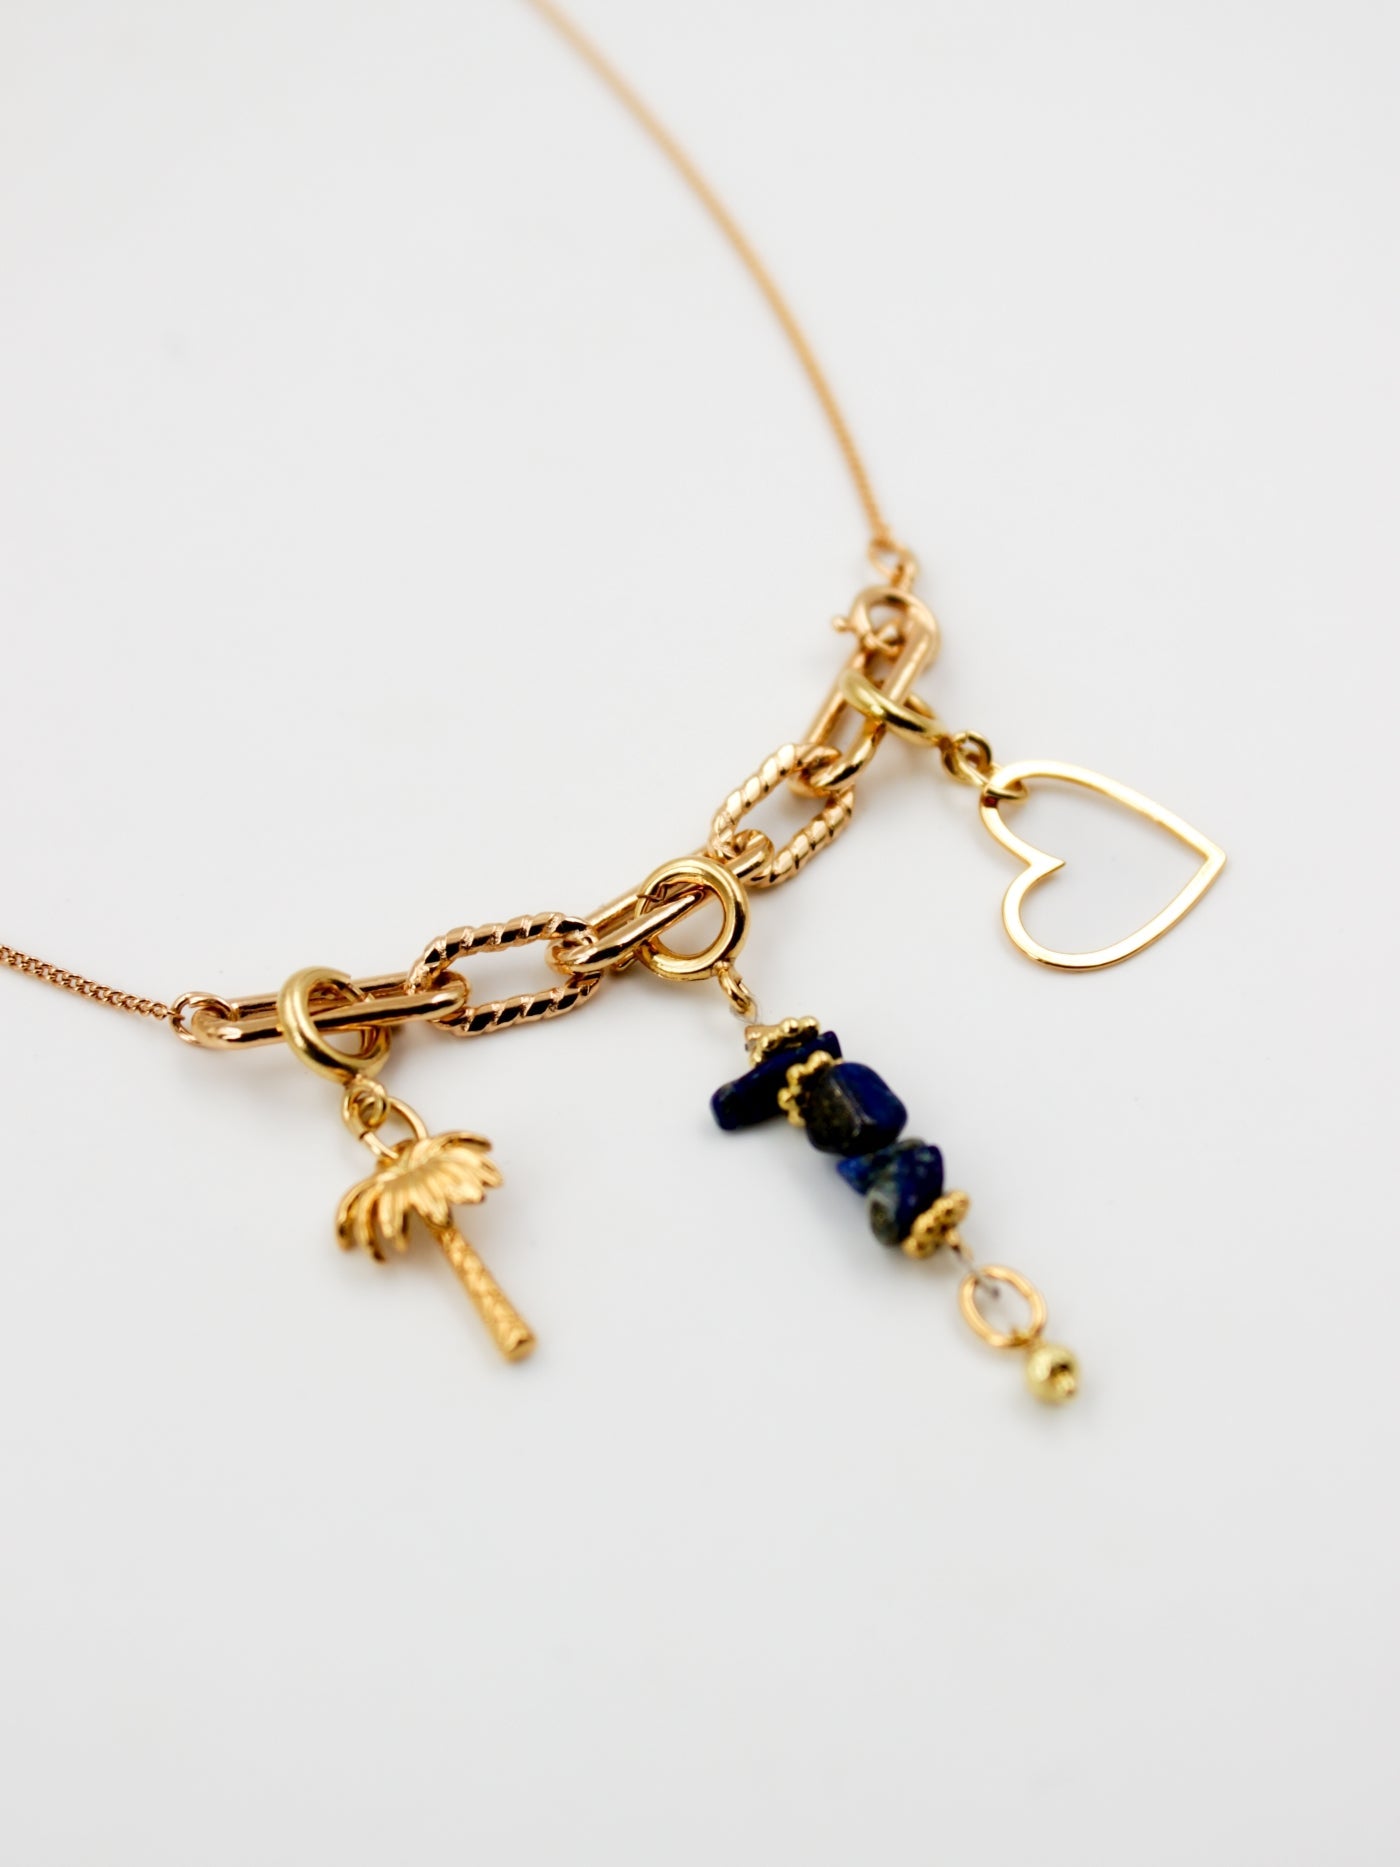 Composition de charms sur le collier fin doré avec 3 anneaux de la gamme GRIGRI - L'Atelier des dames